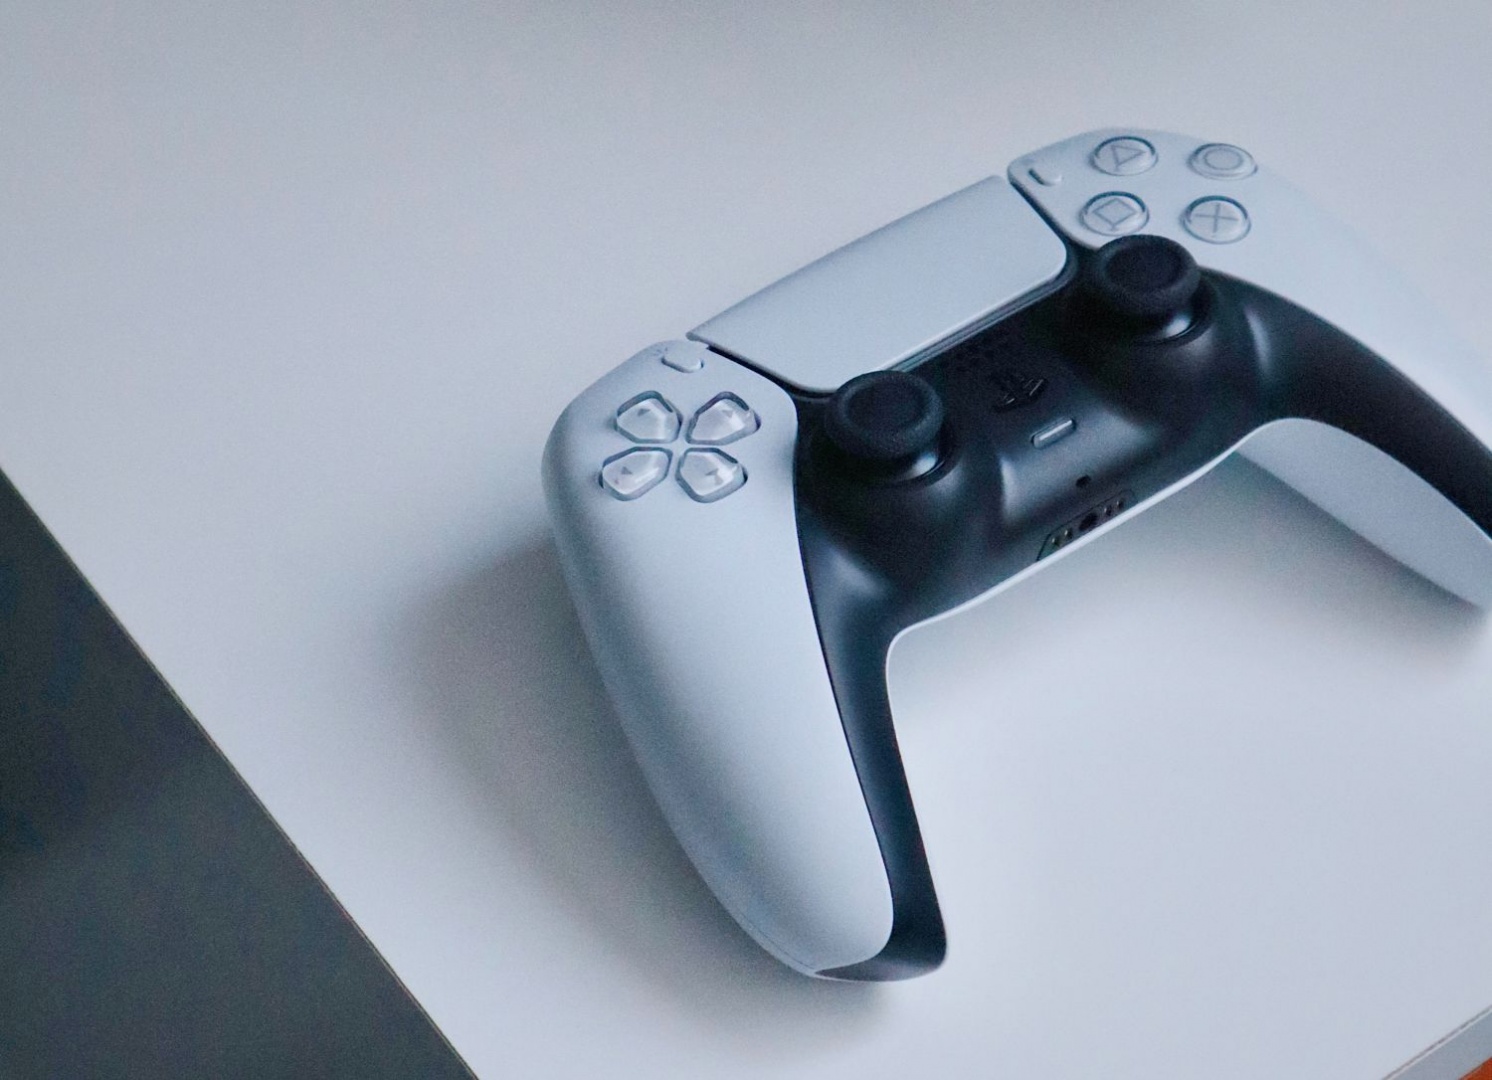 Por que o PS5 virá com um game instalado? A resposta está no novo